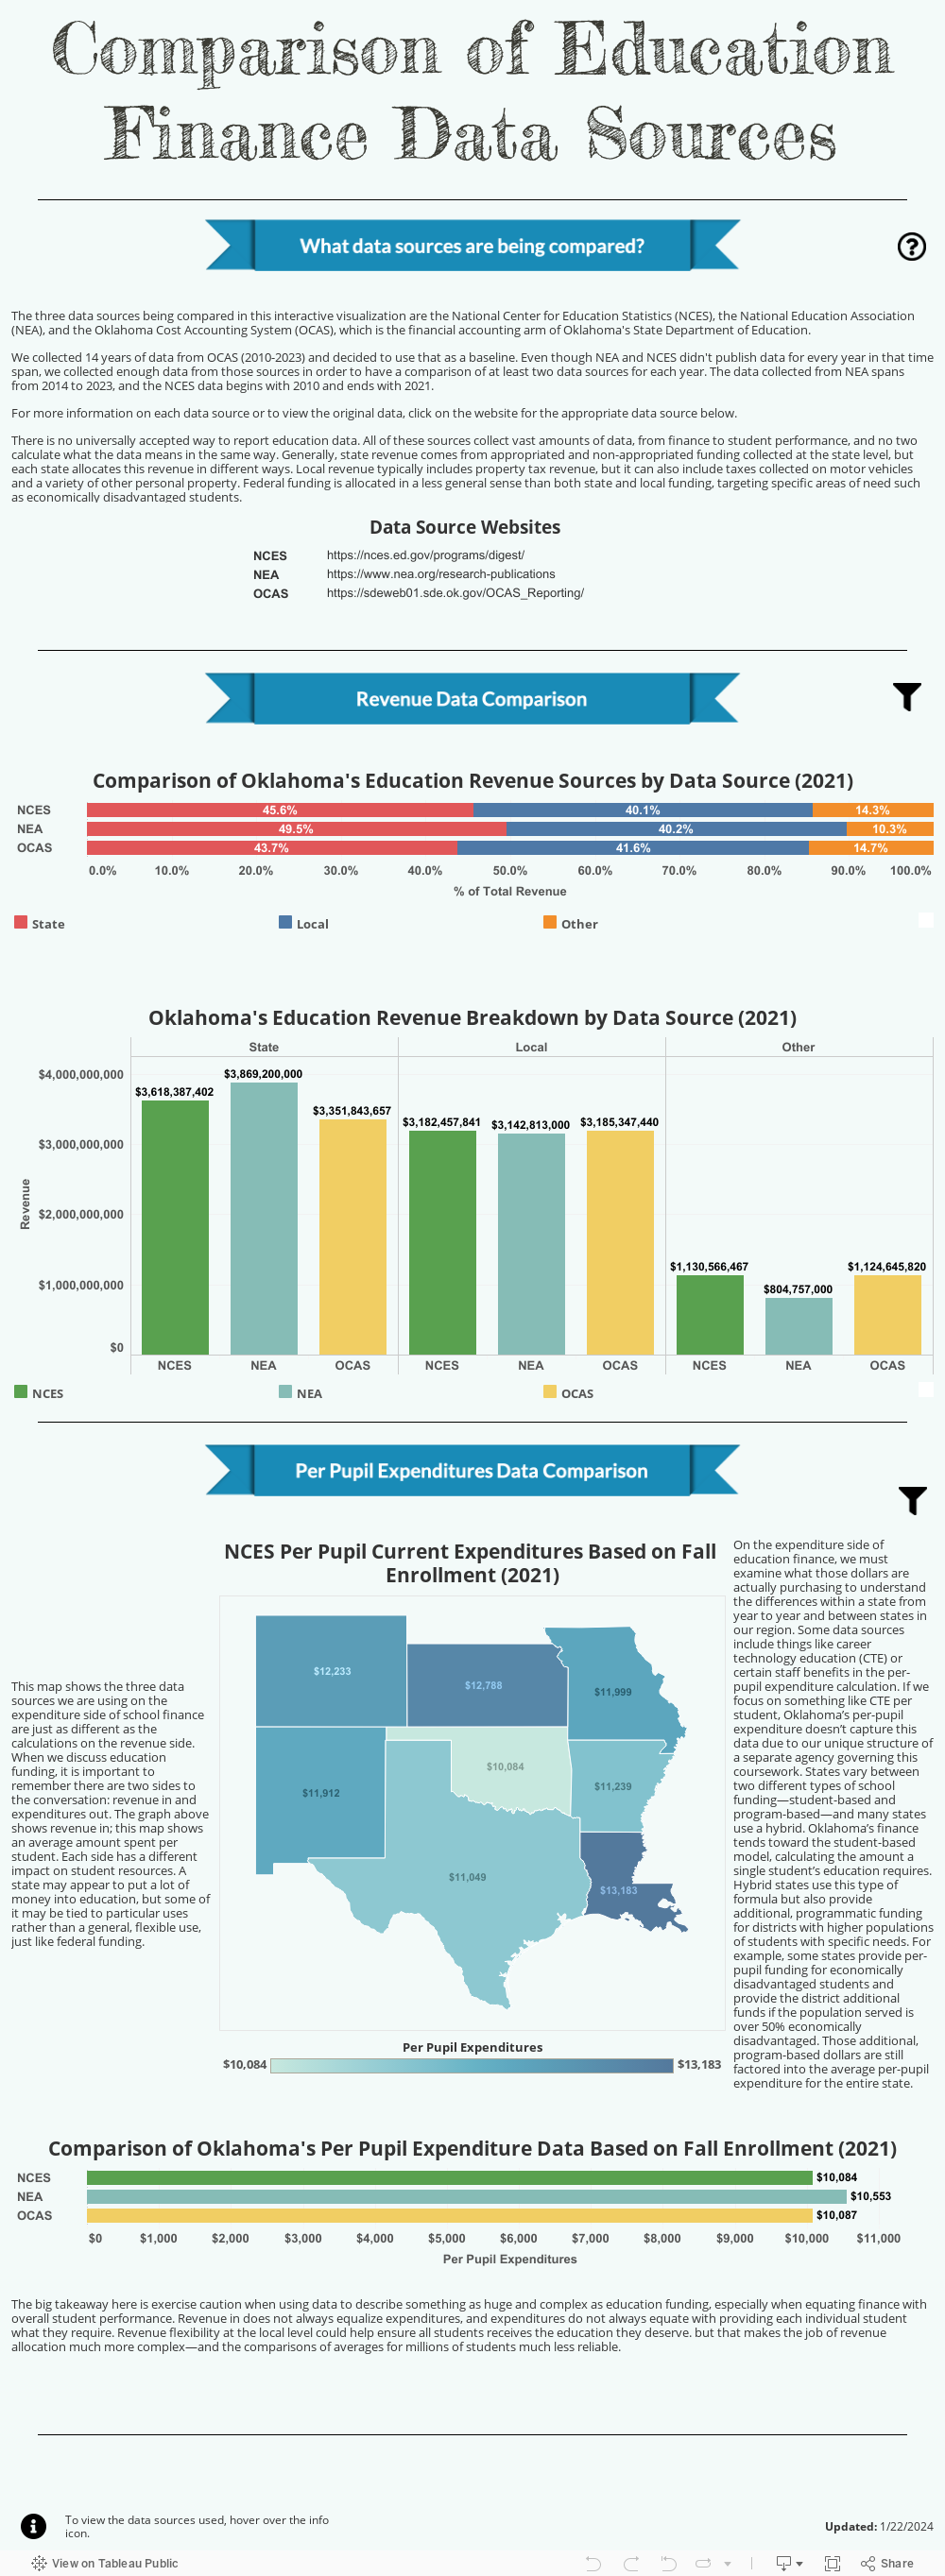 Comparison of Education Finance Data Sources 